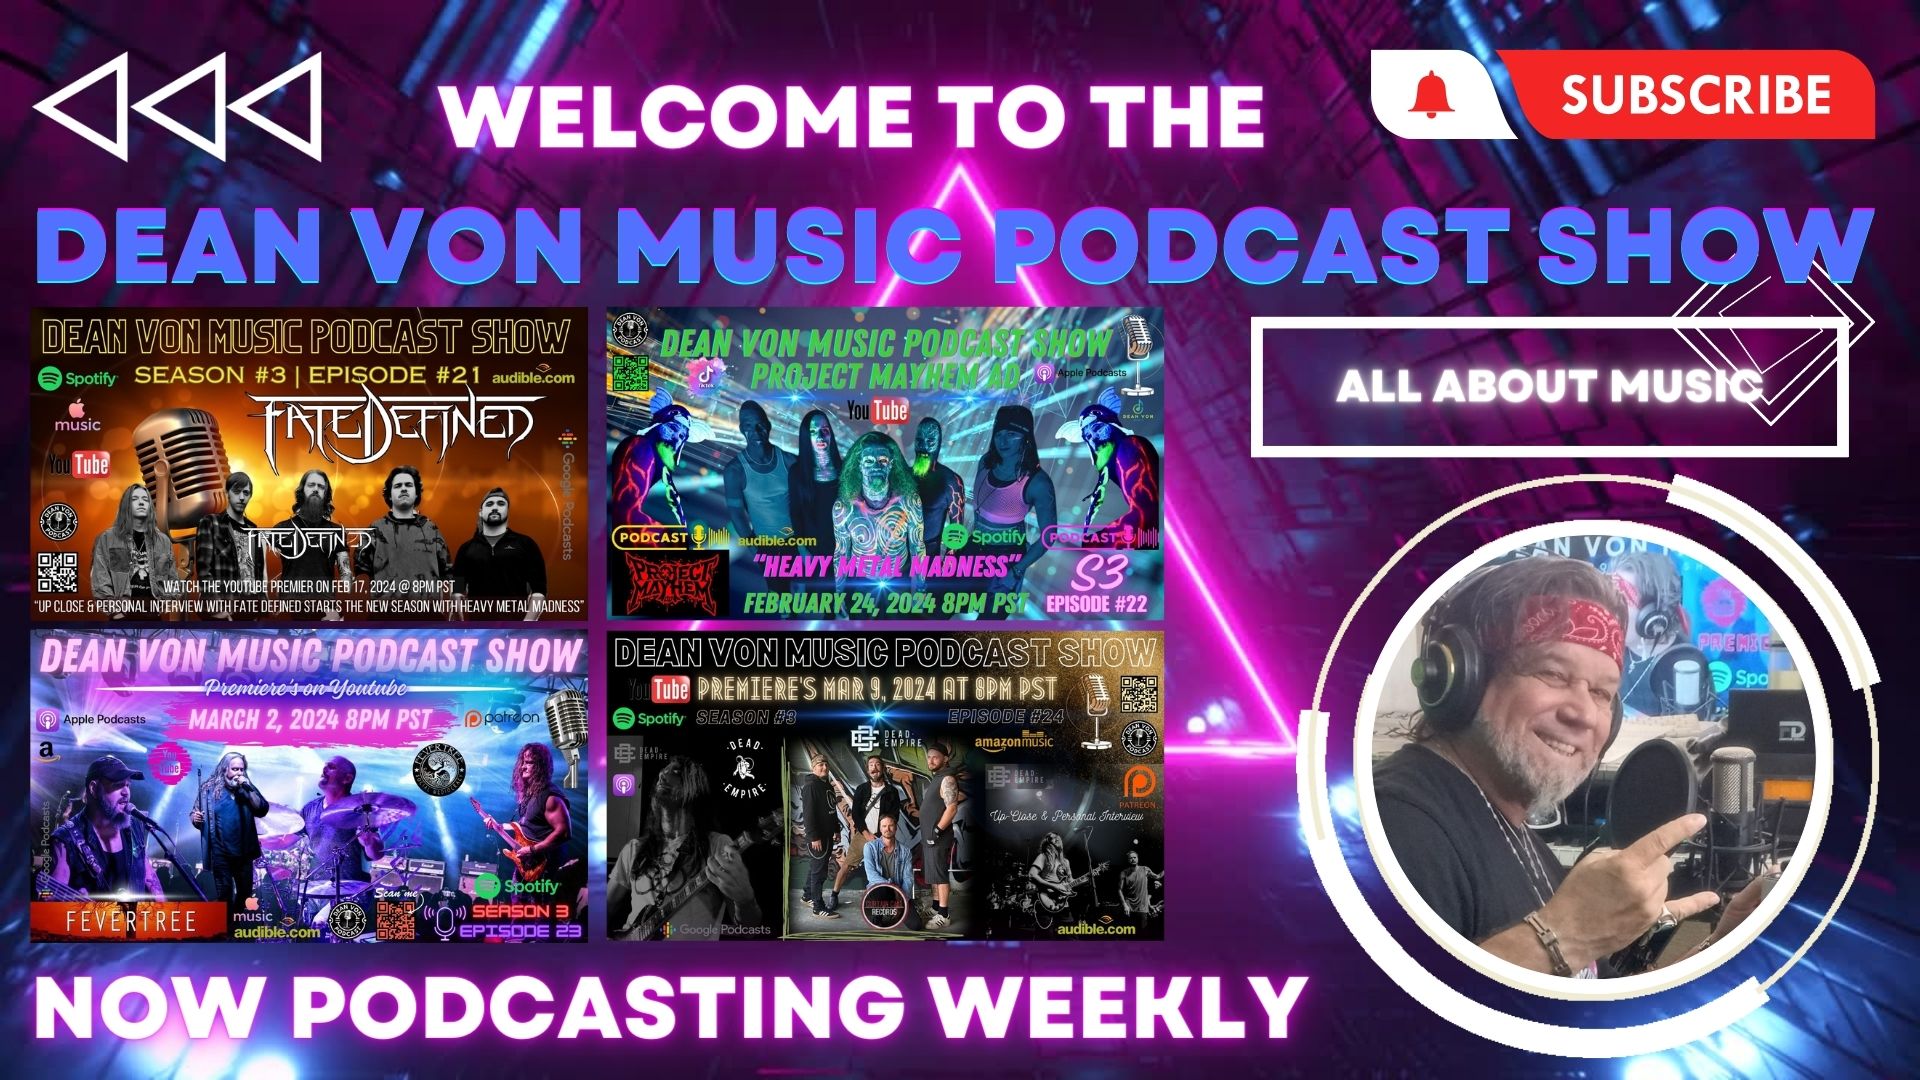 Dean Von Music Podcast Show